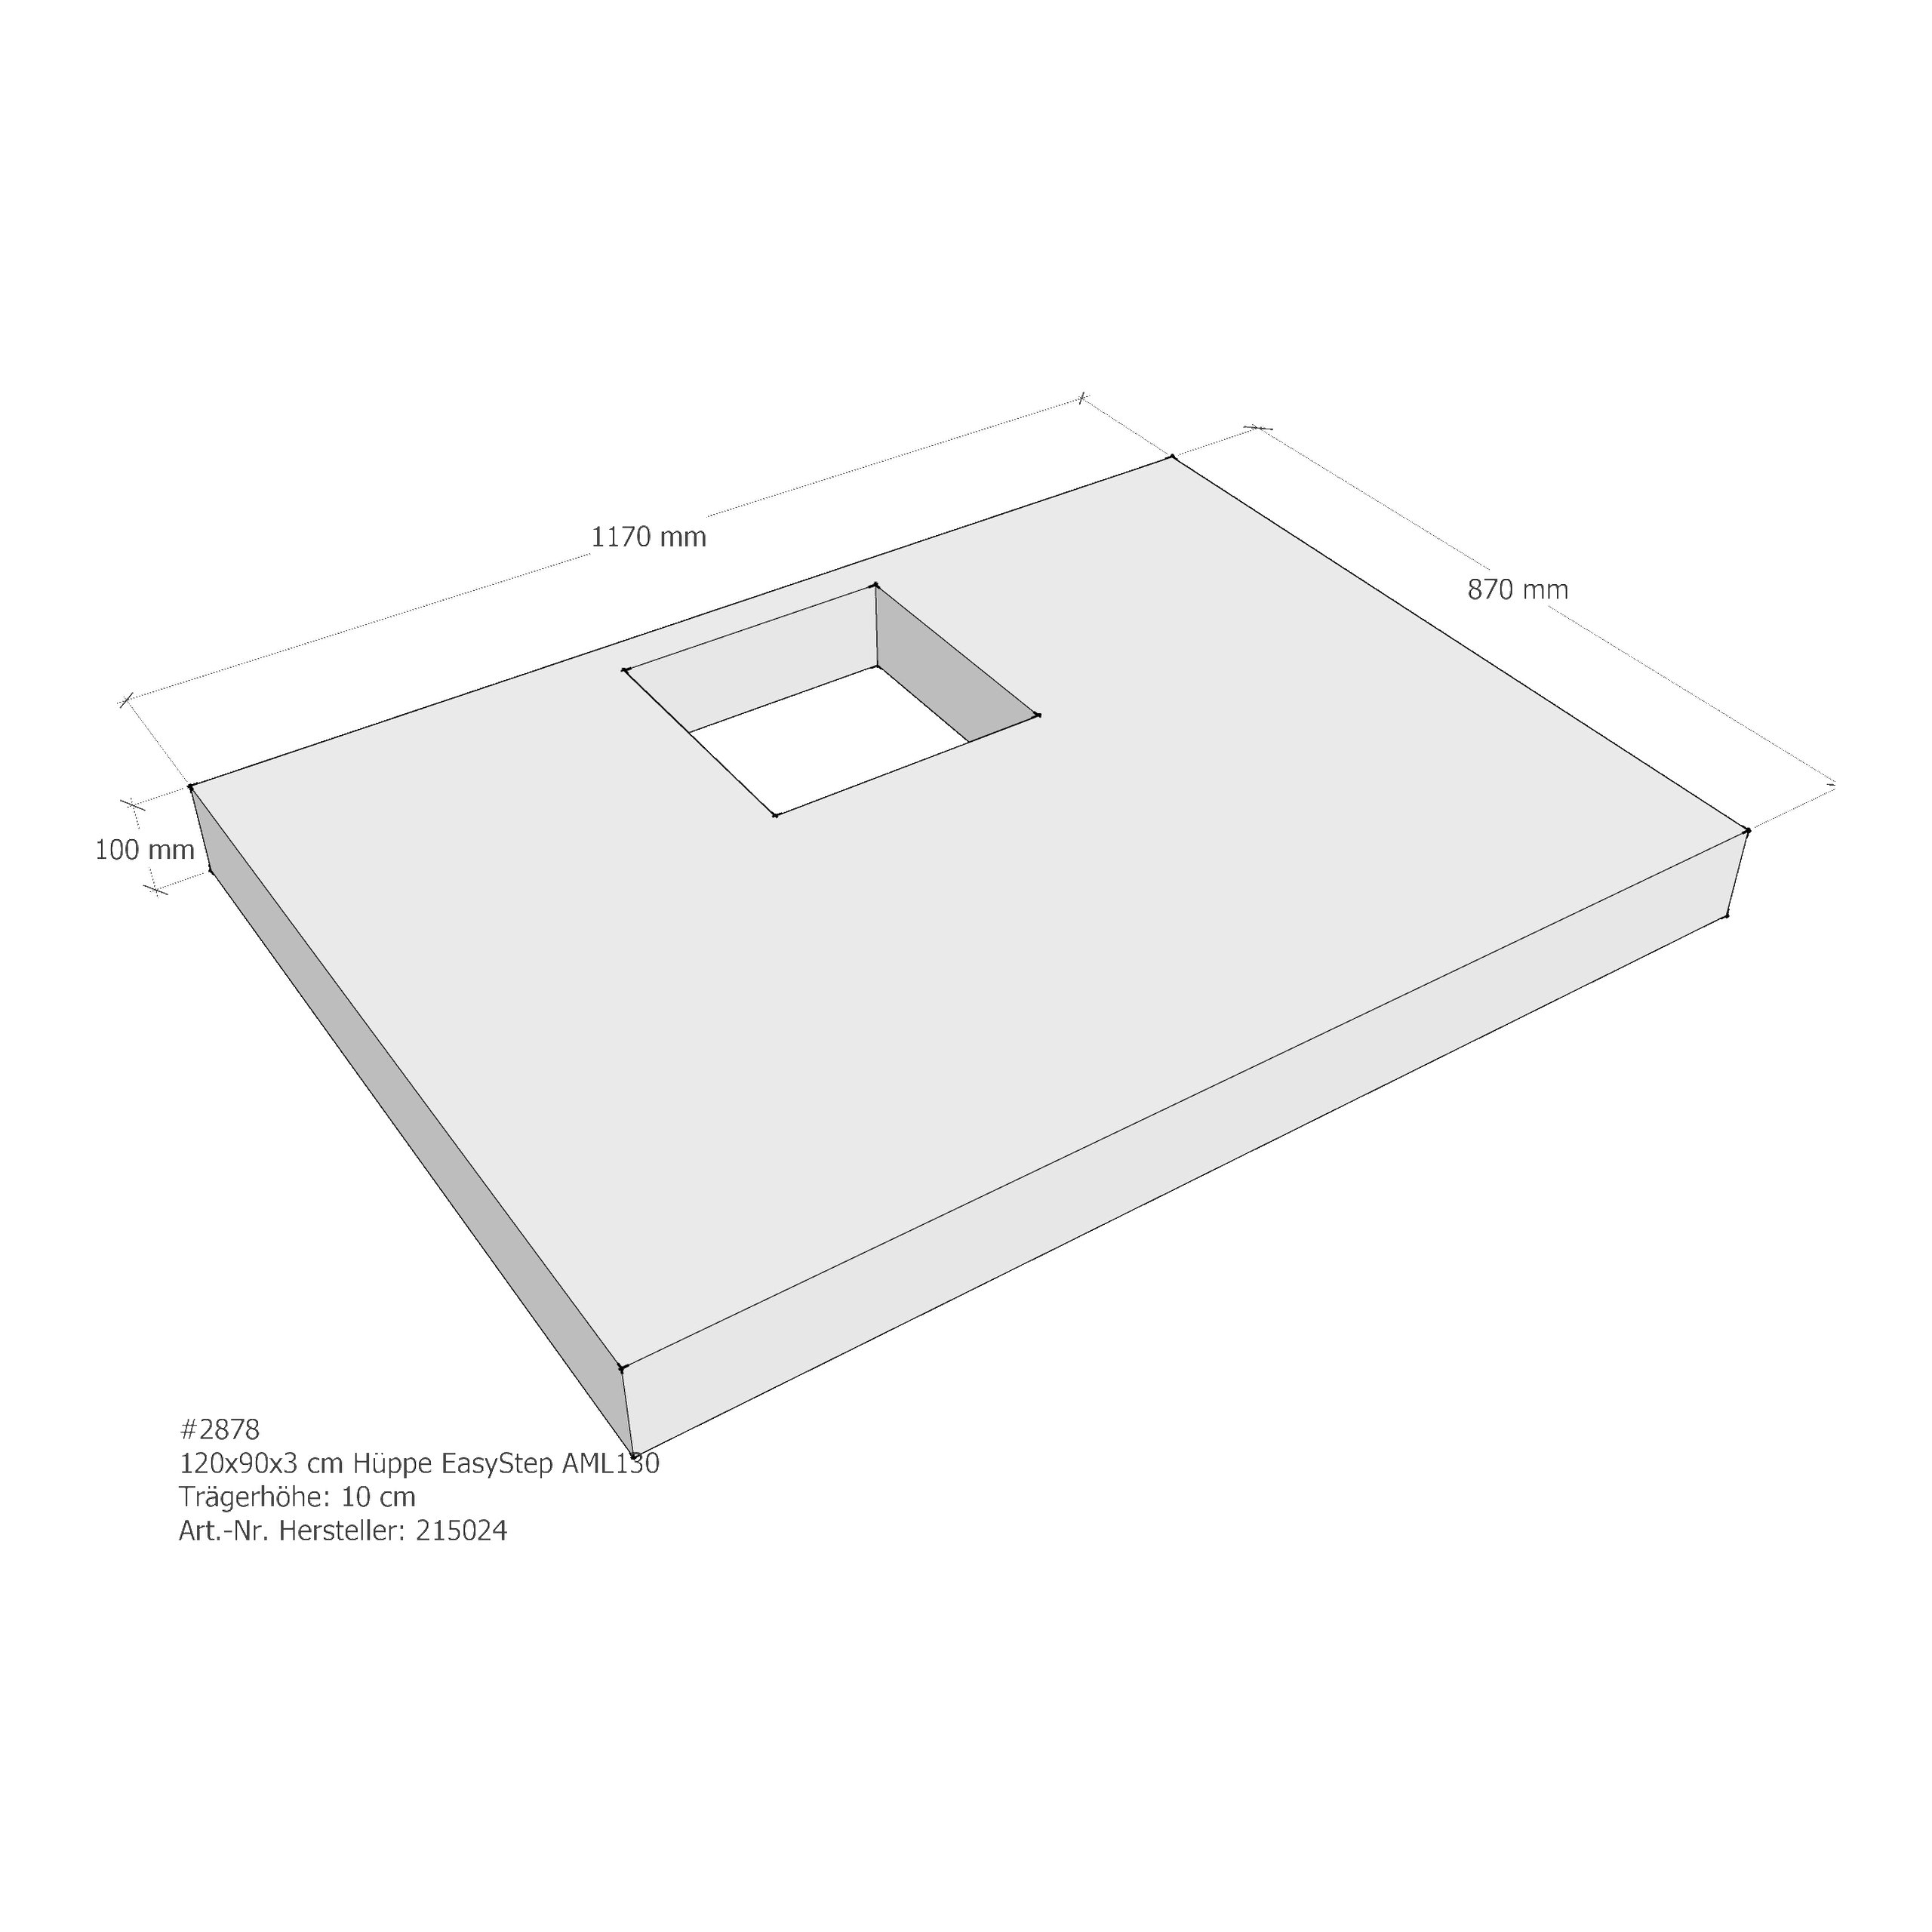 Duschwannenträger für Hüppe EasyStep 120 × 90 × 3 cm